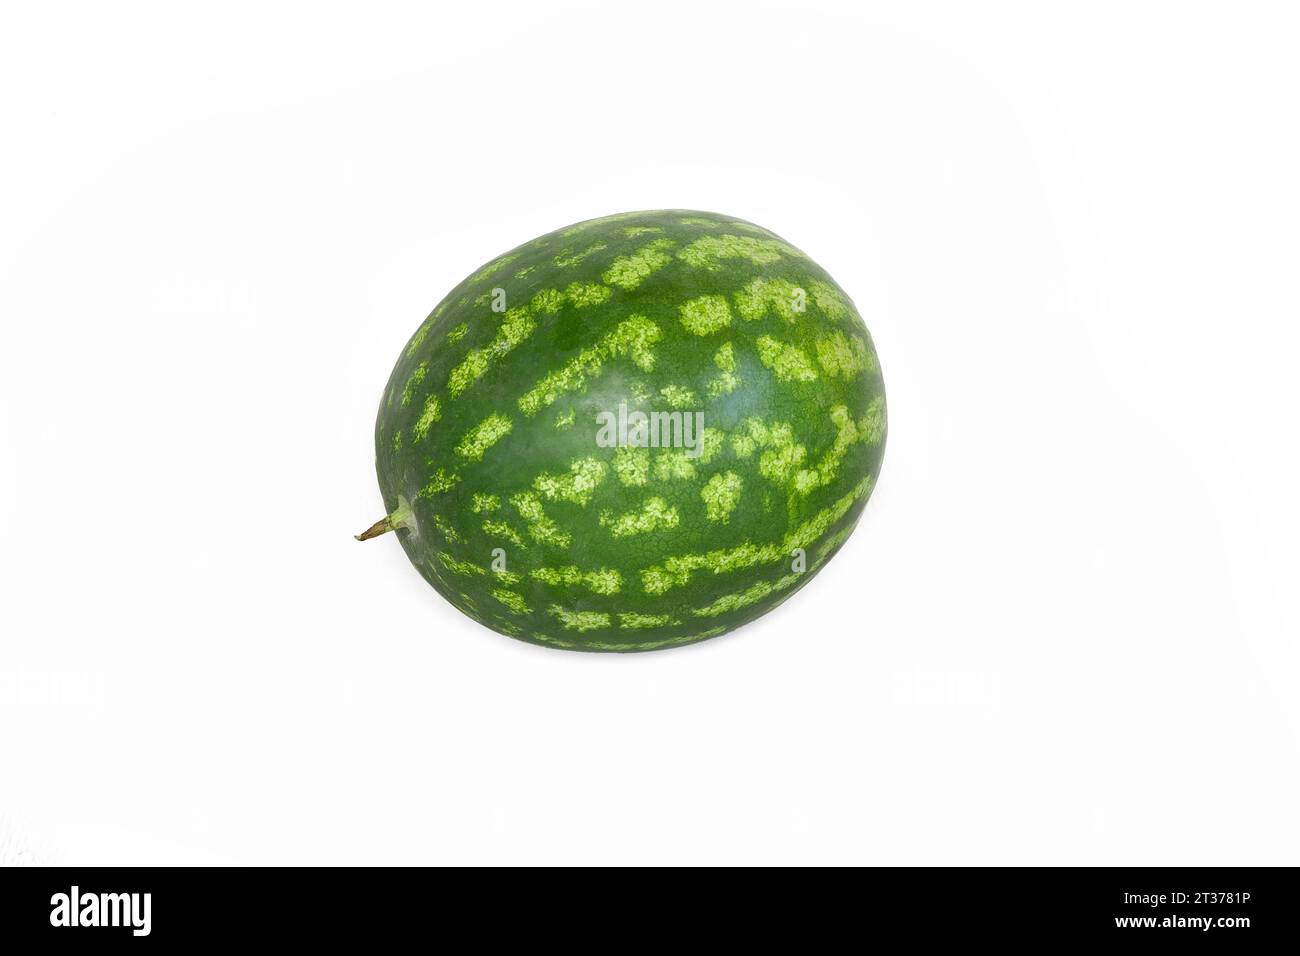 Whole watermelon fruit isolated on white background Stock Photo